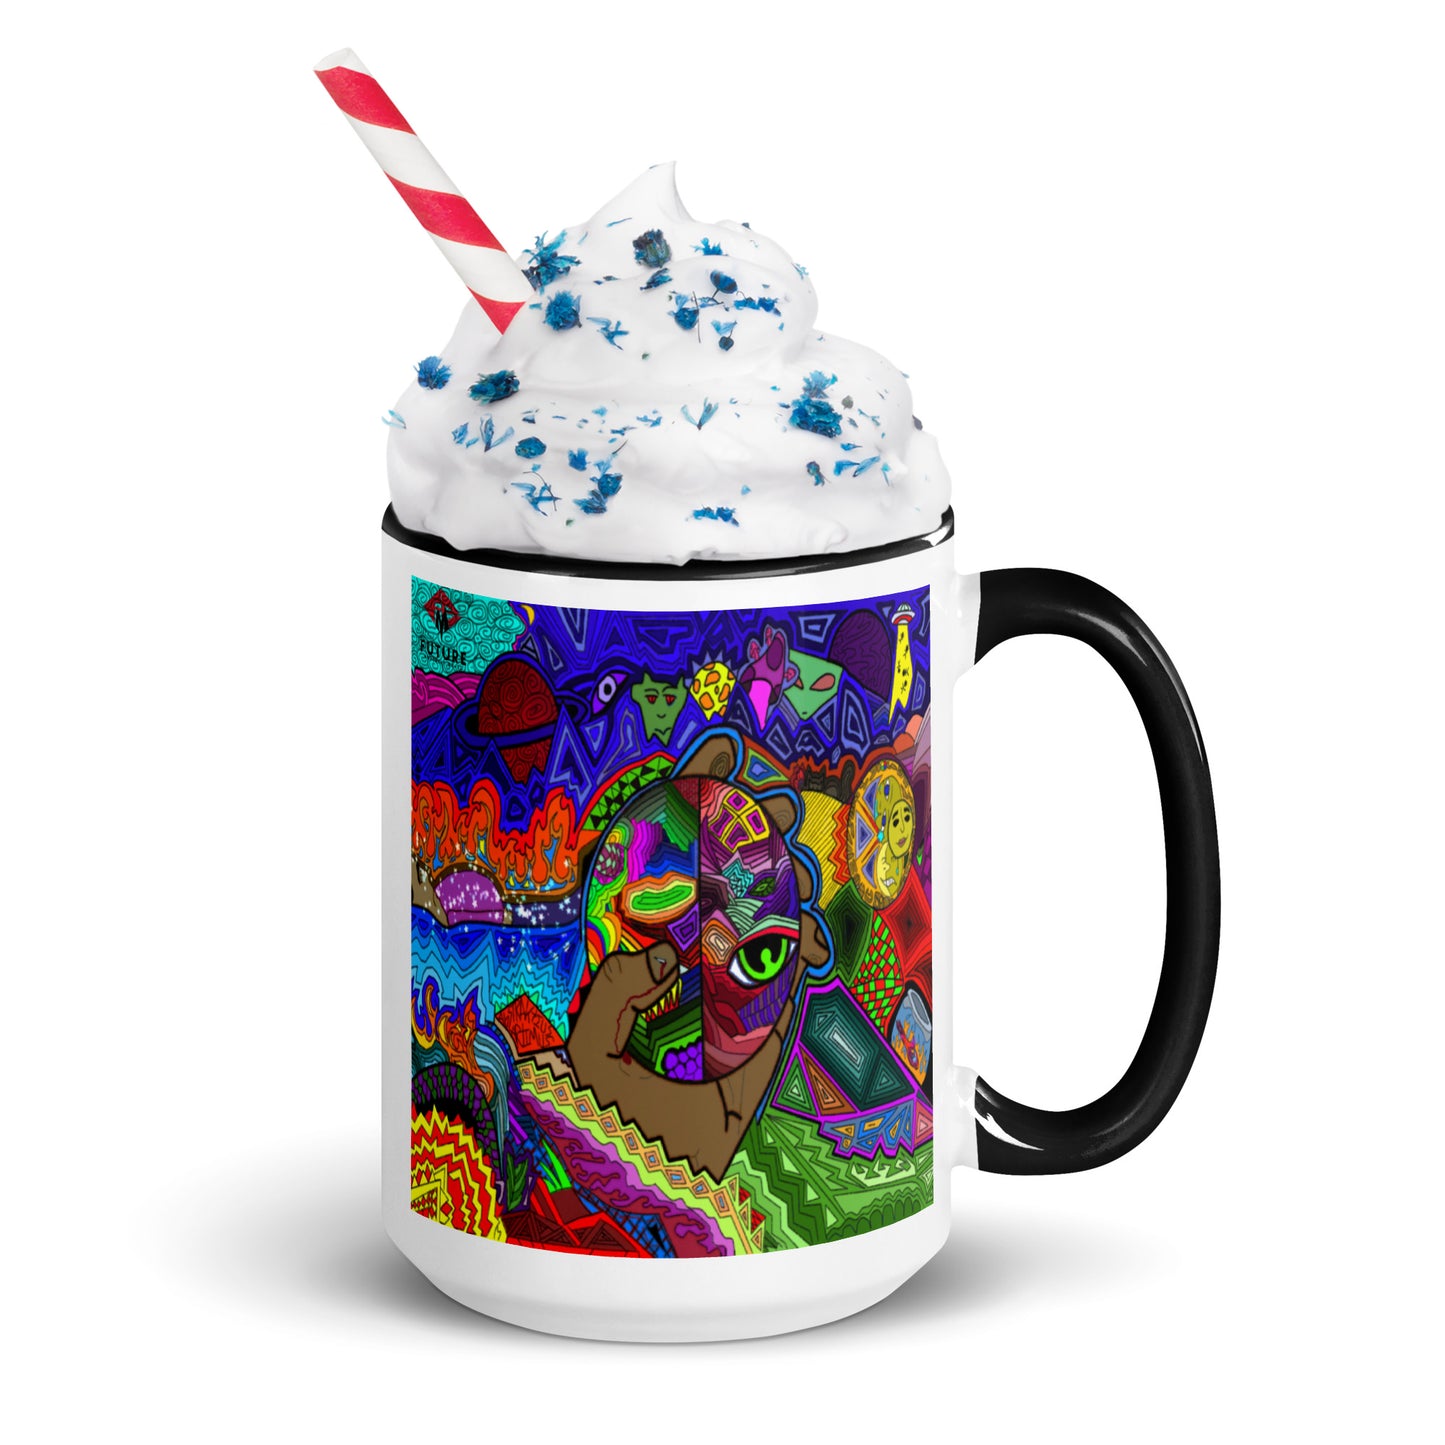 Abstraktius Artimus - Abstrakt Noize 2 Mug With Color Inside